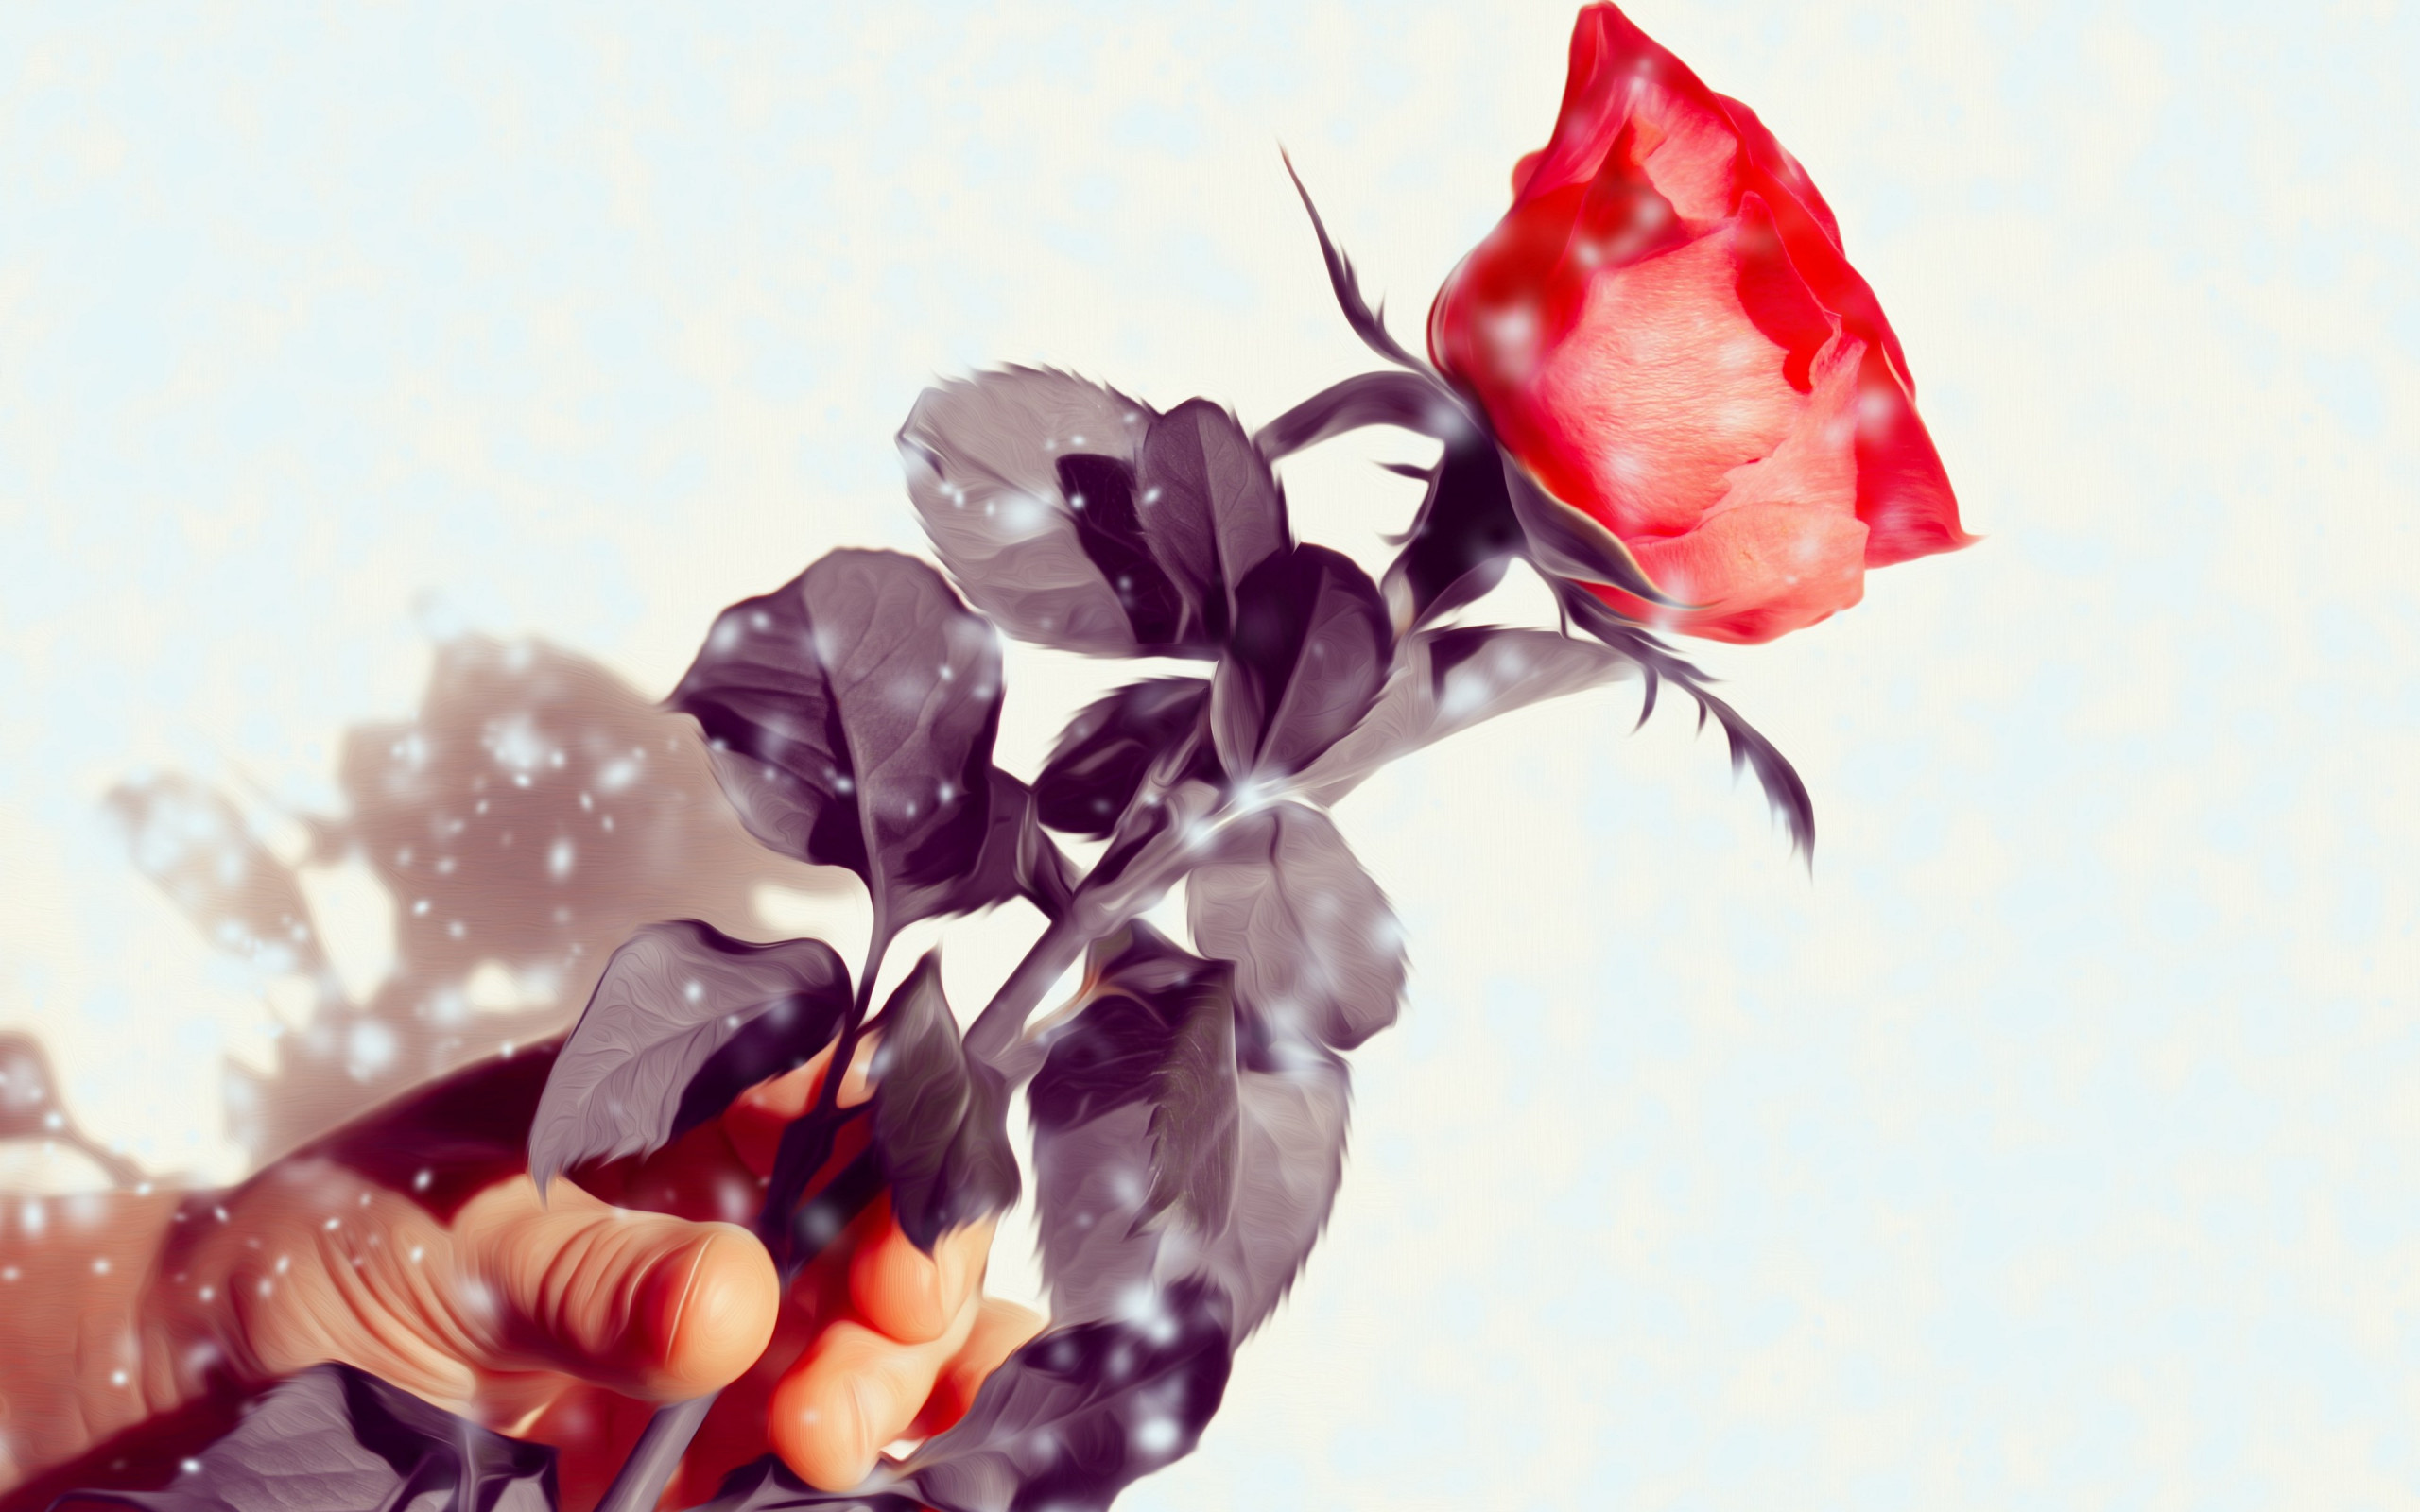 Rose flower wallpaper 2560x1600